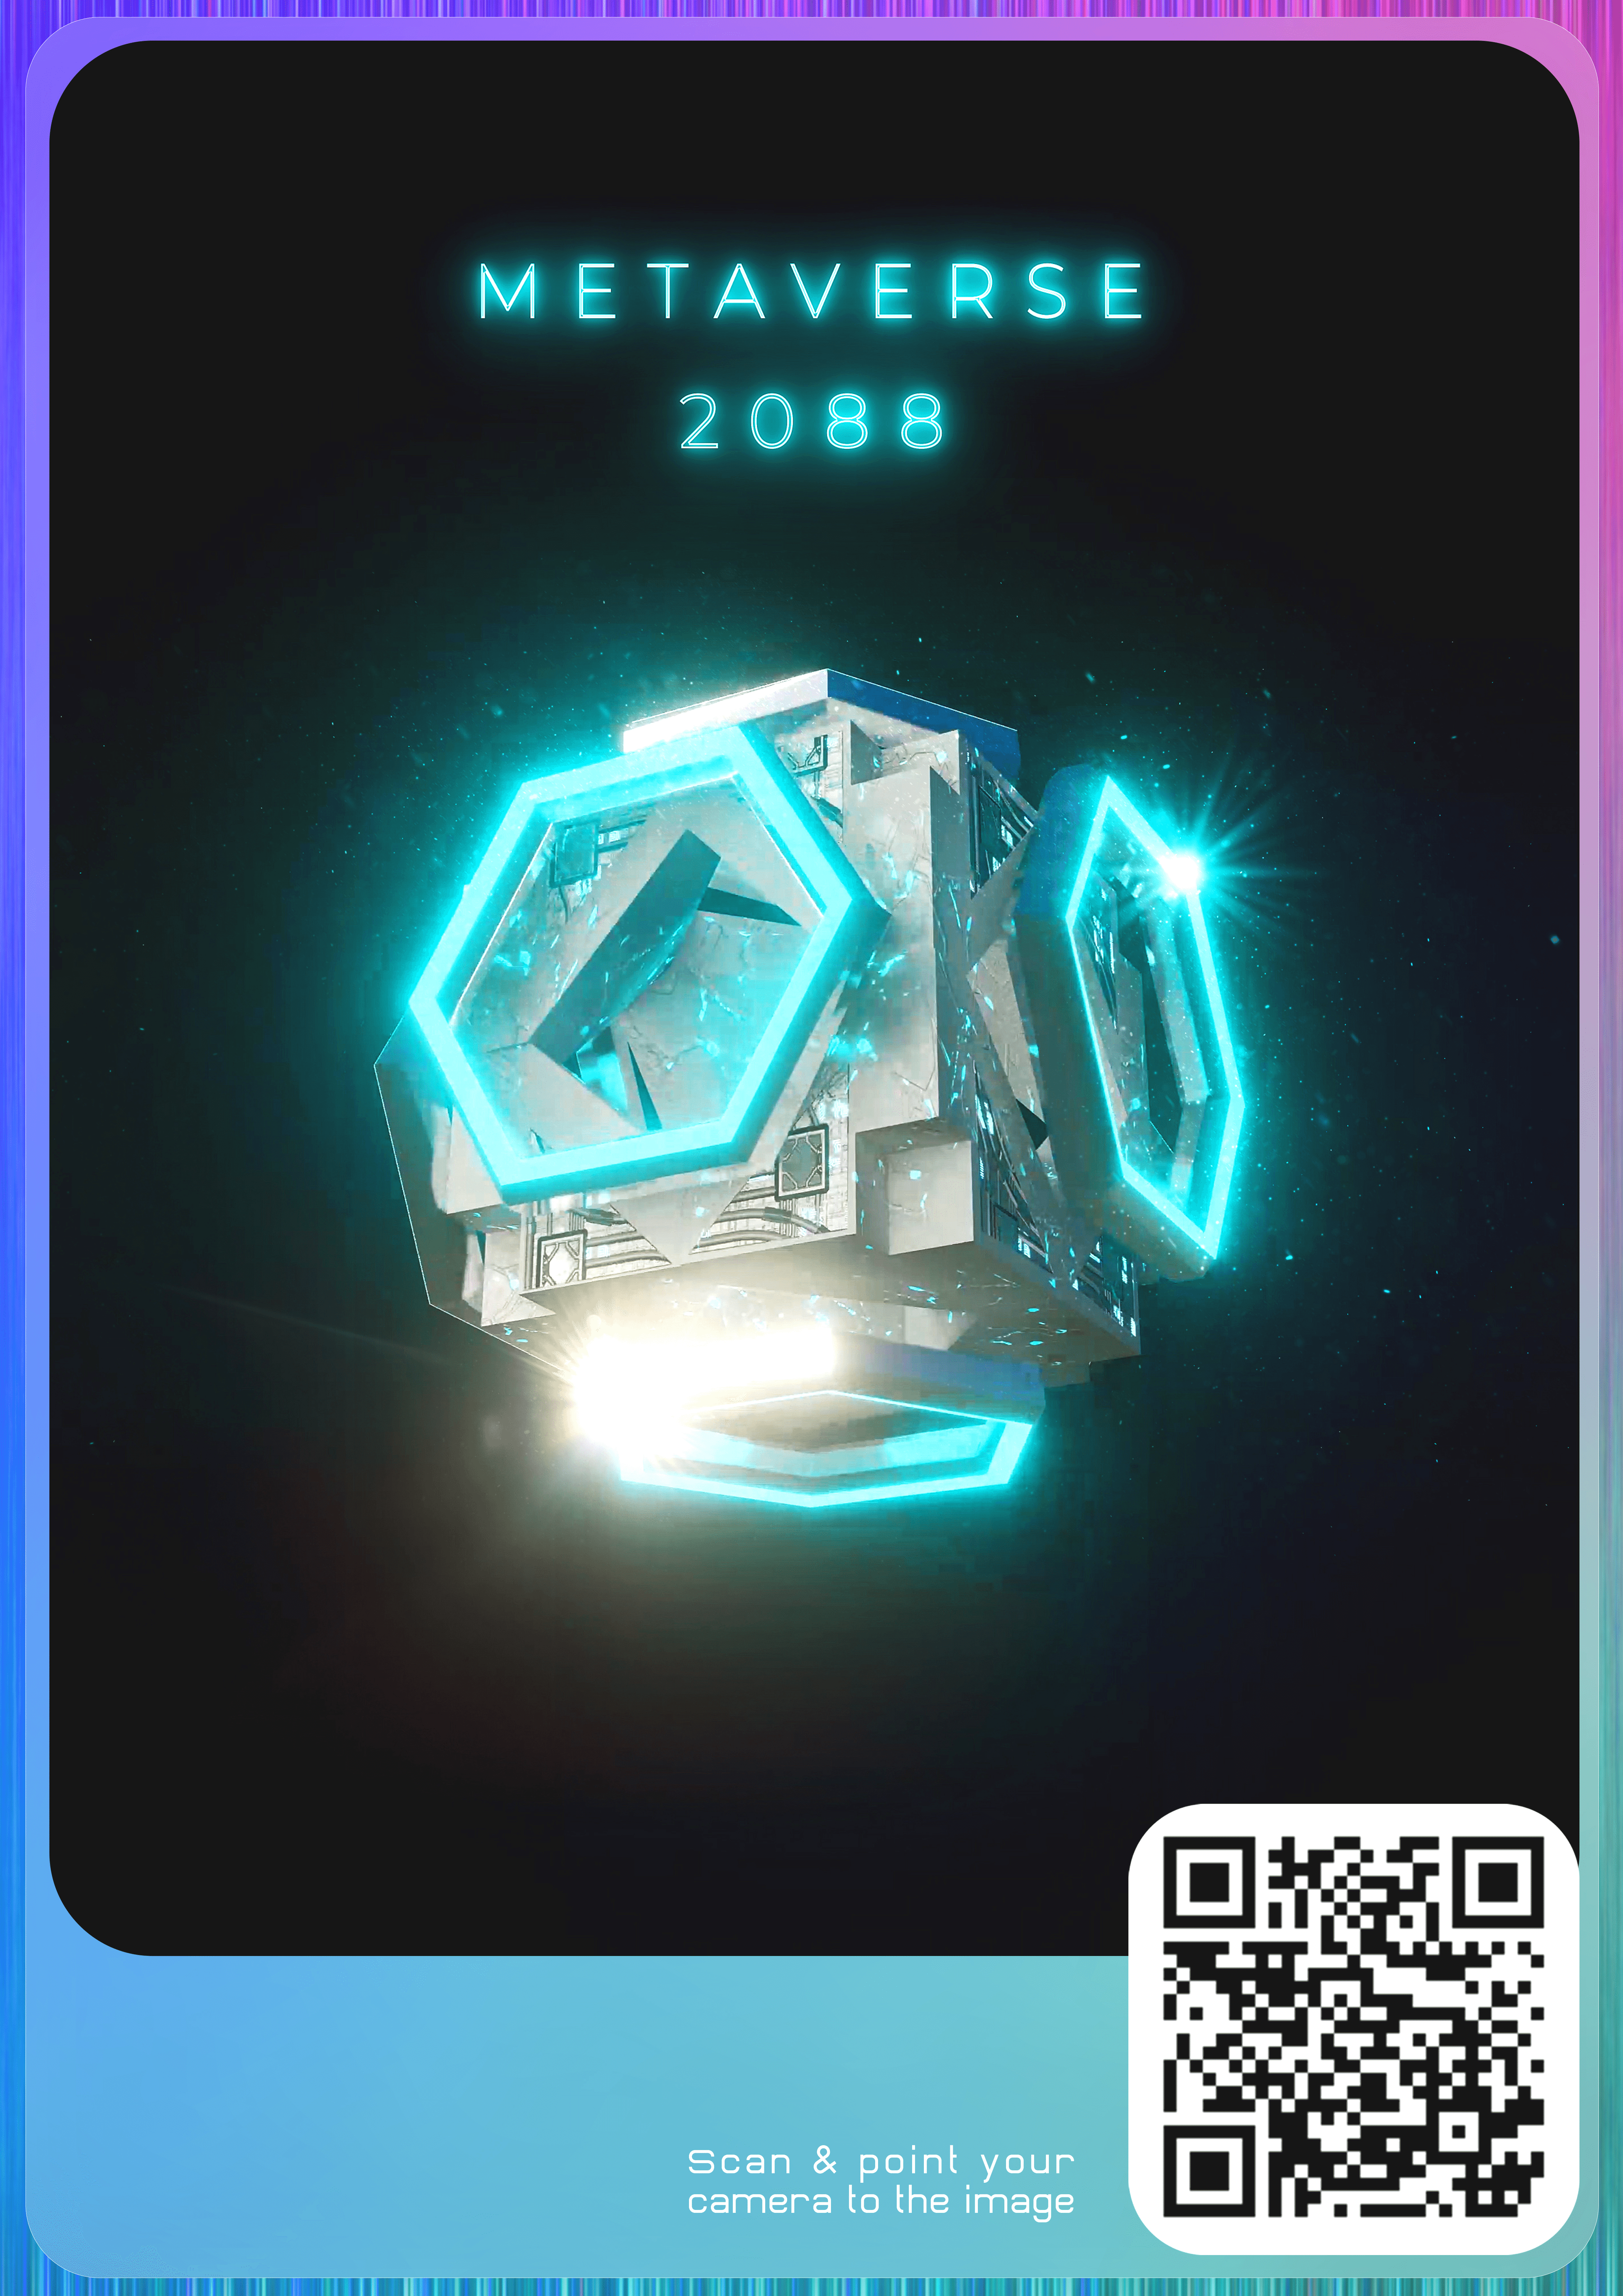 Metaverse 2088 Cube